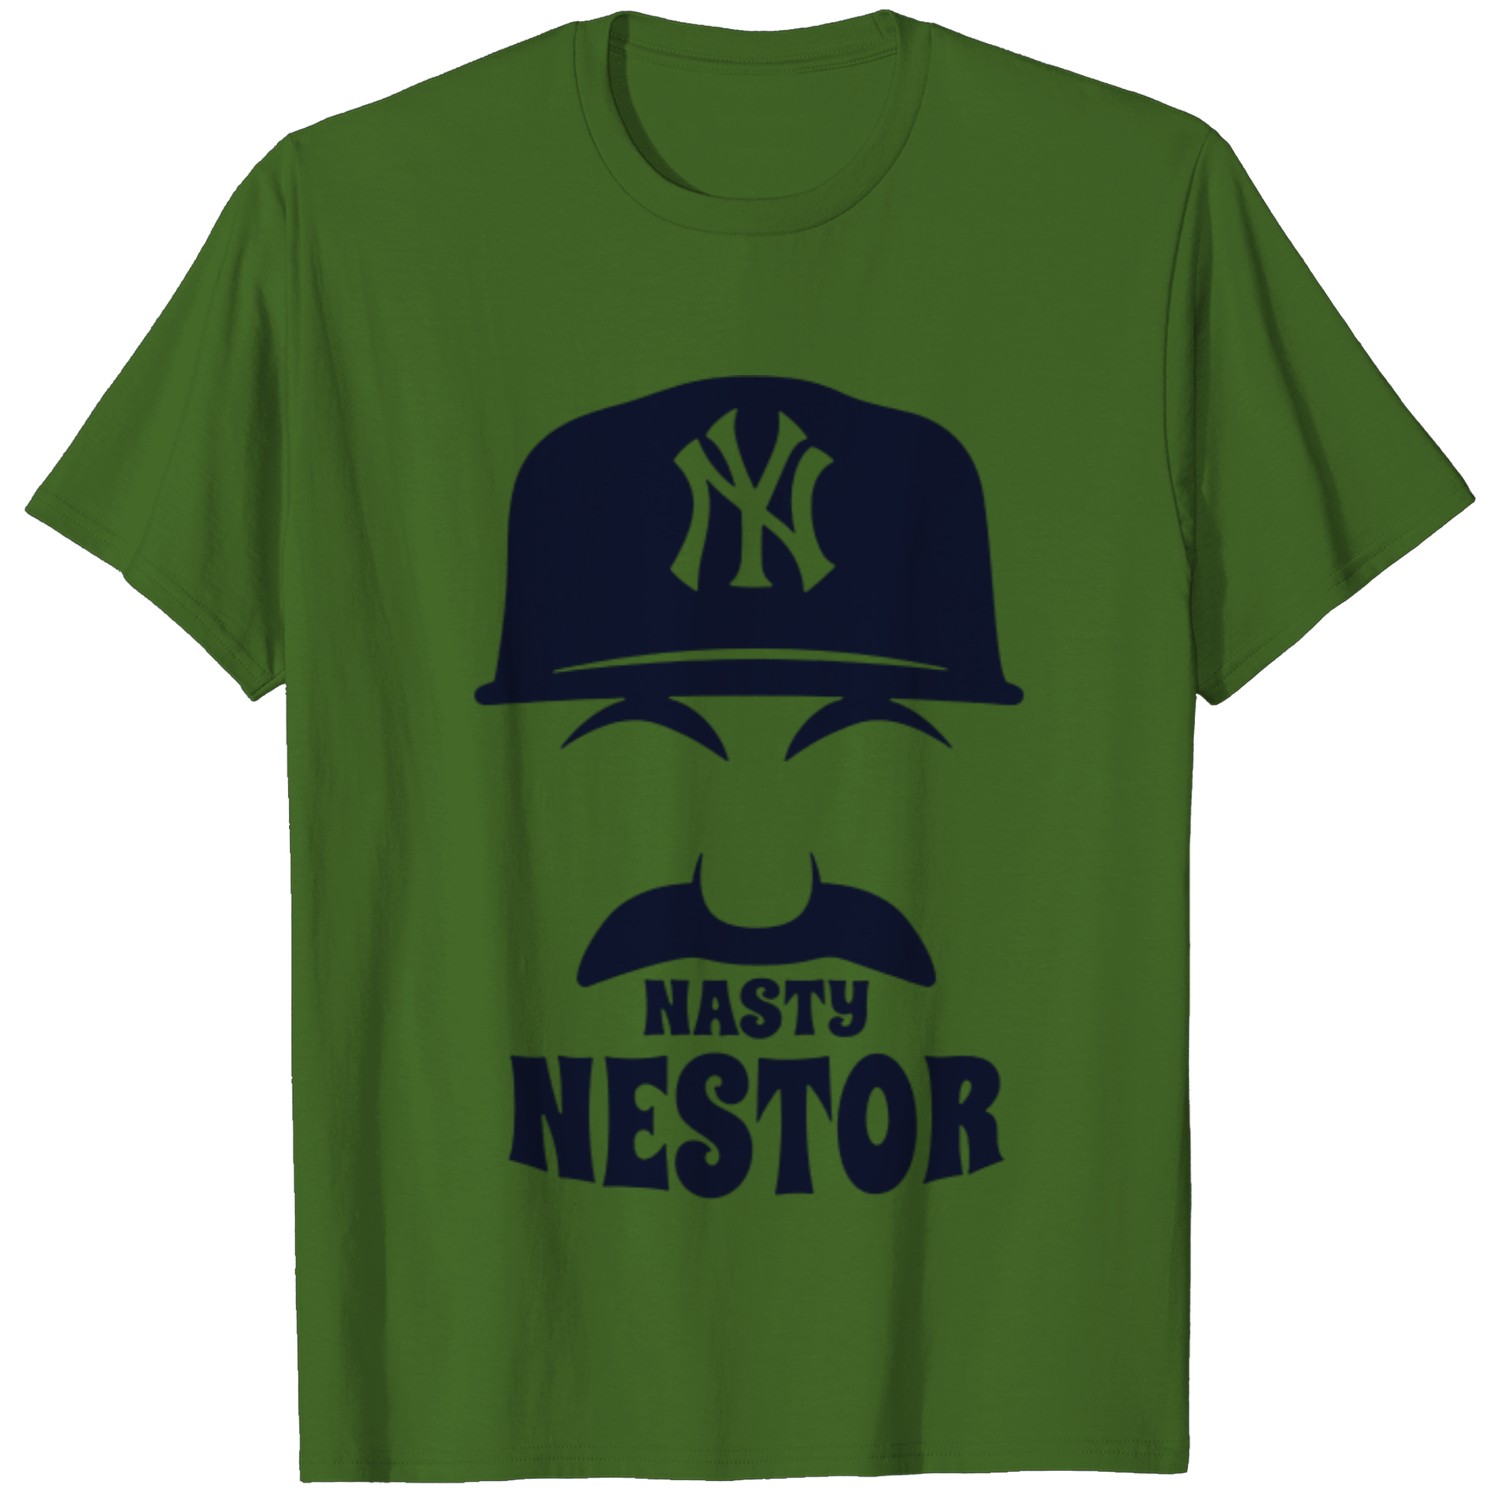 men nasty nestor t shirt